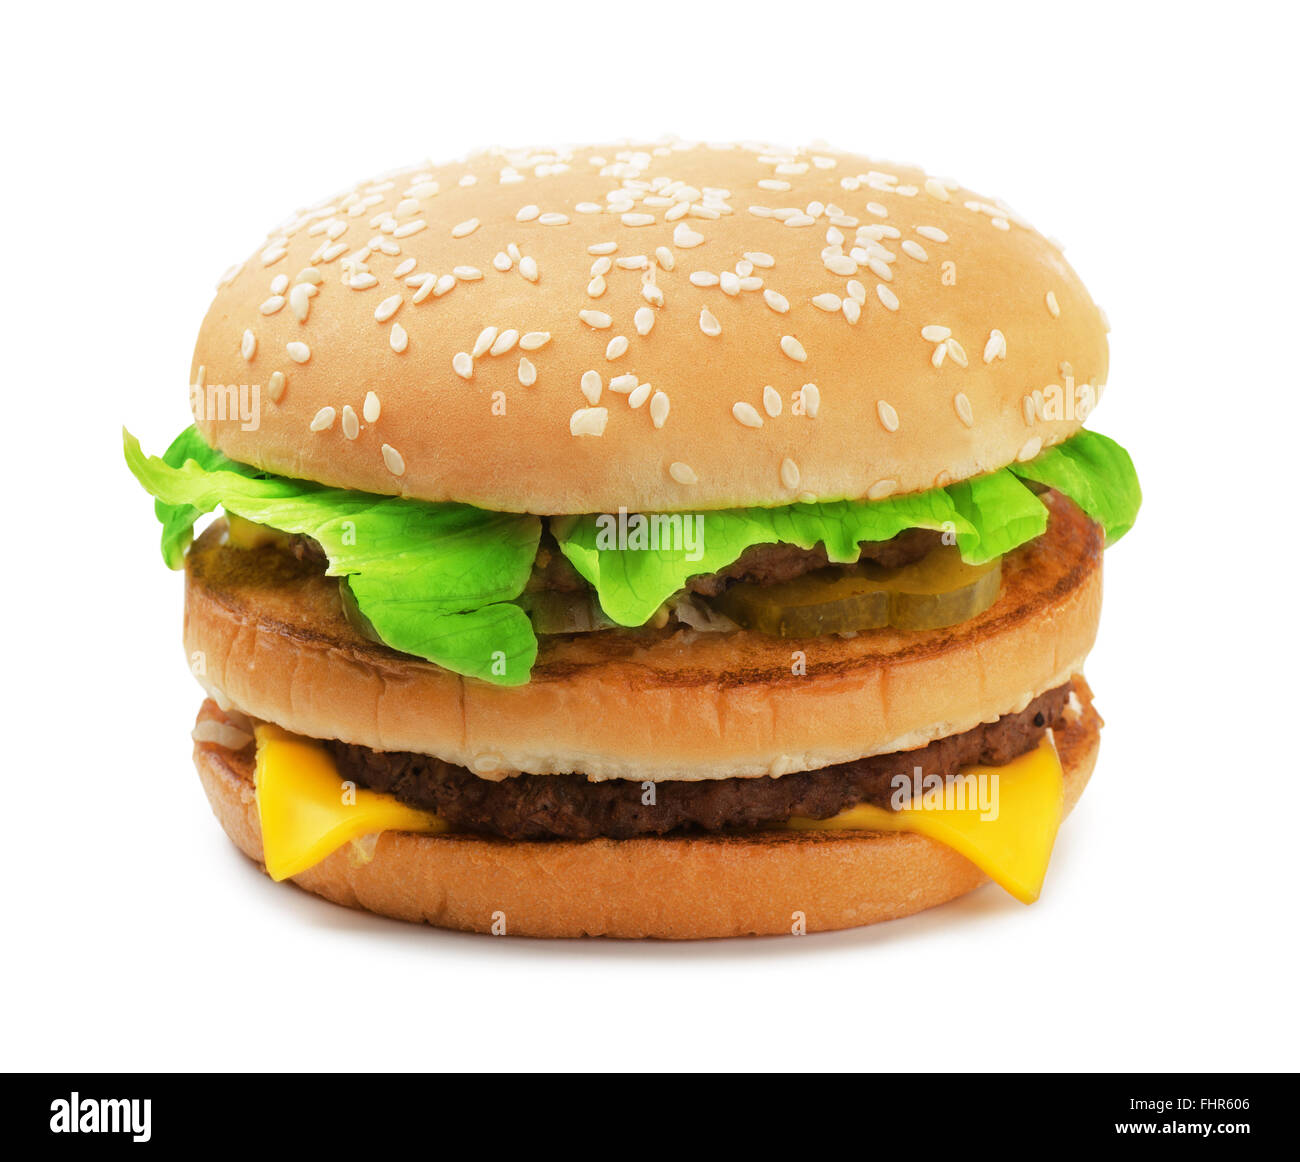 Big burger isolated on white background Stock Photo